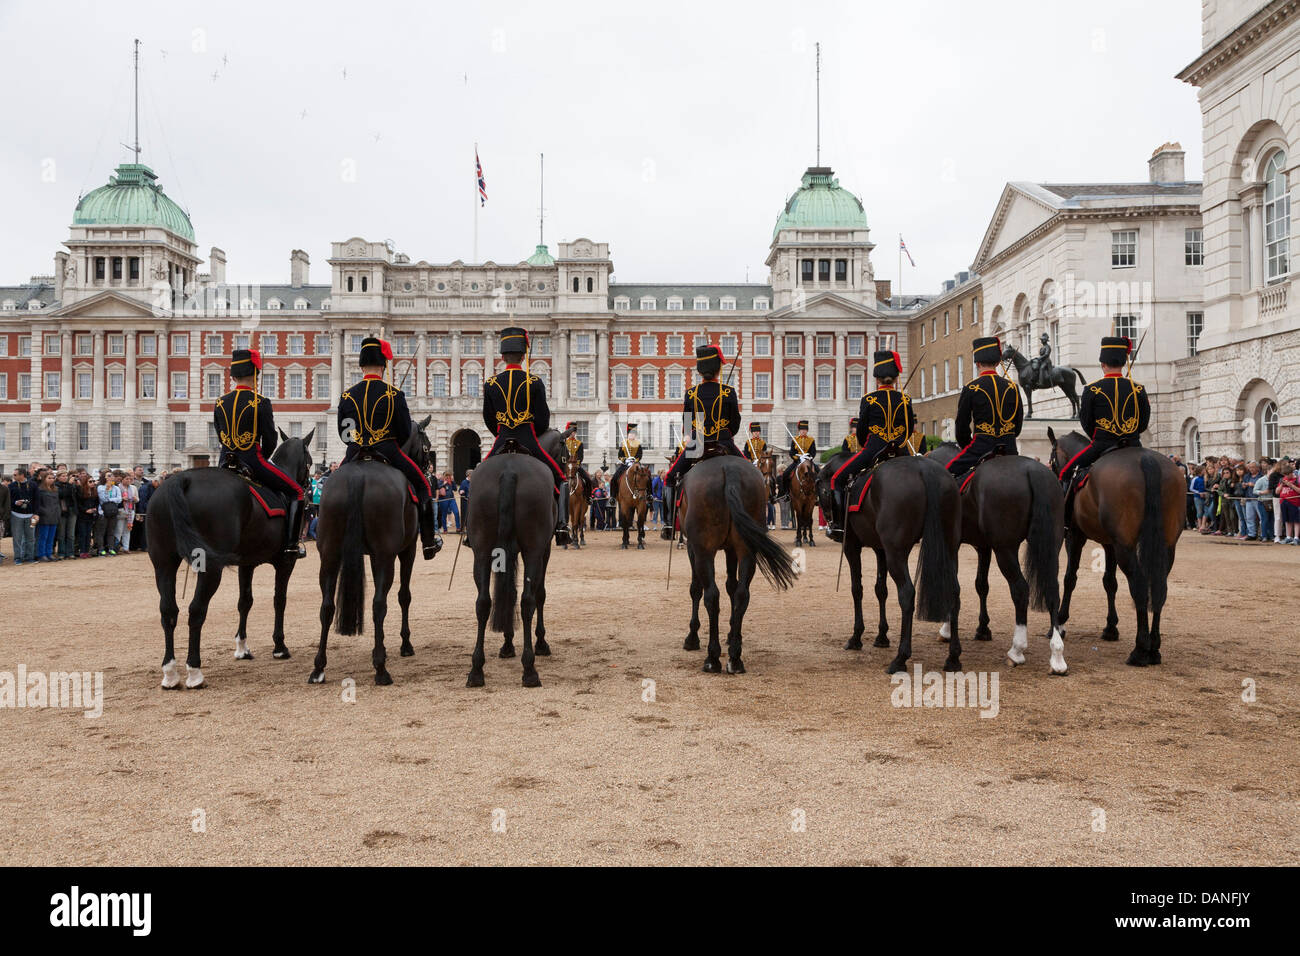 Horse Guards Parade, Whitehall, London, UK Stock Photo